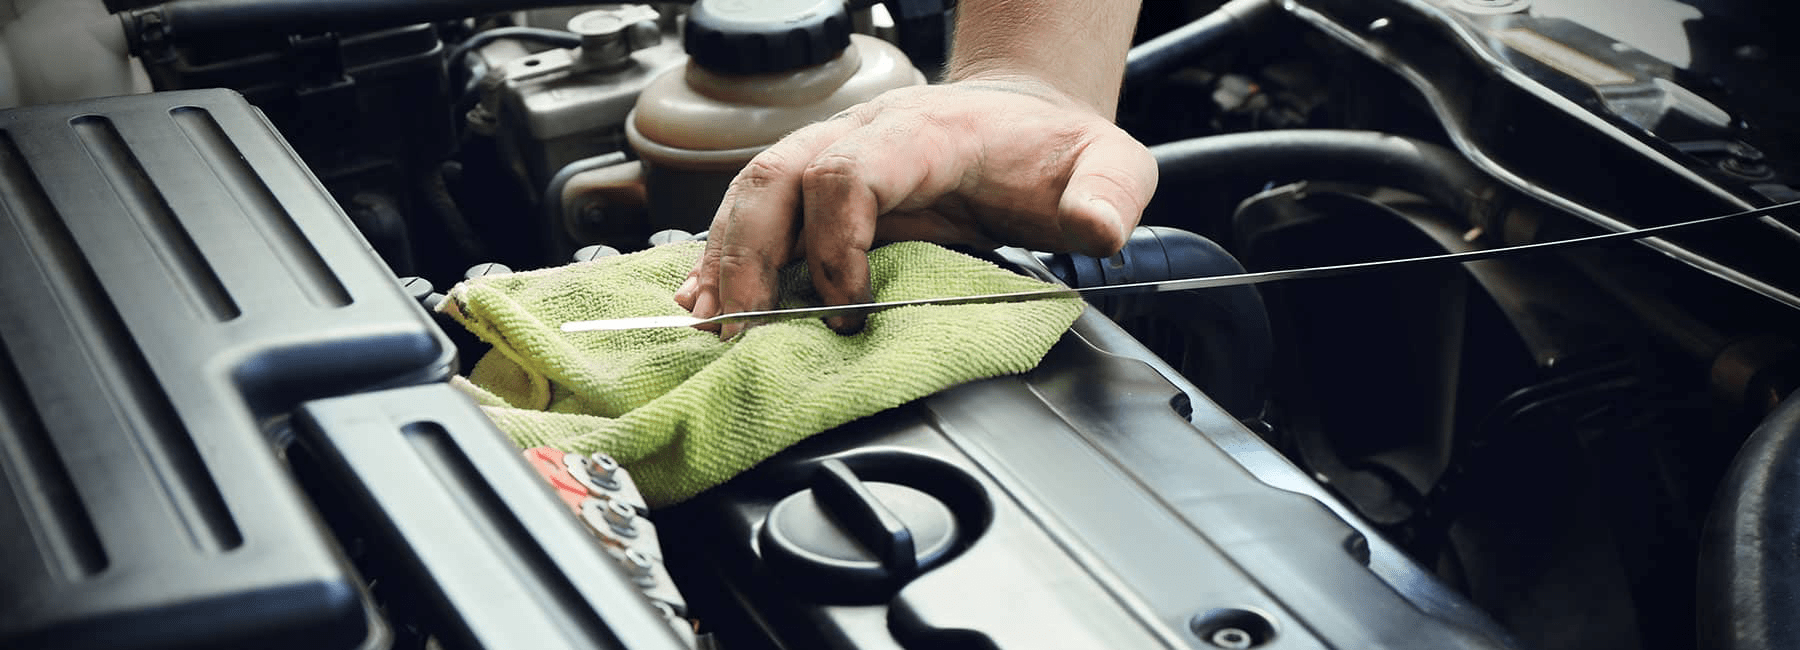 technician checks oil level in car engine